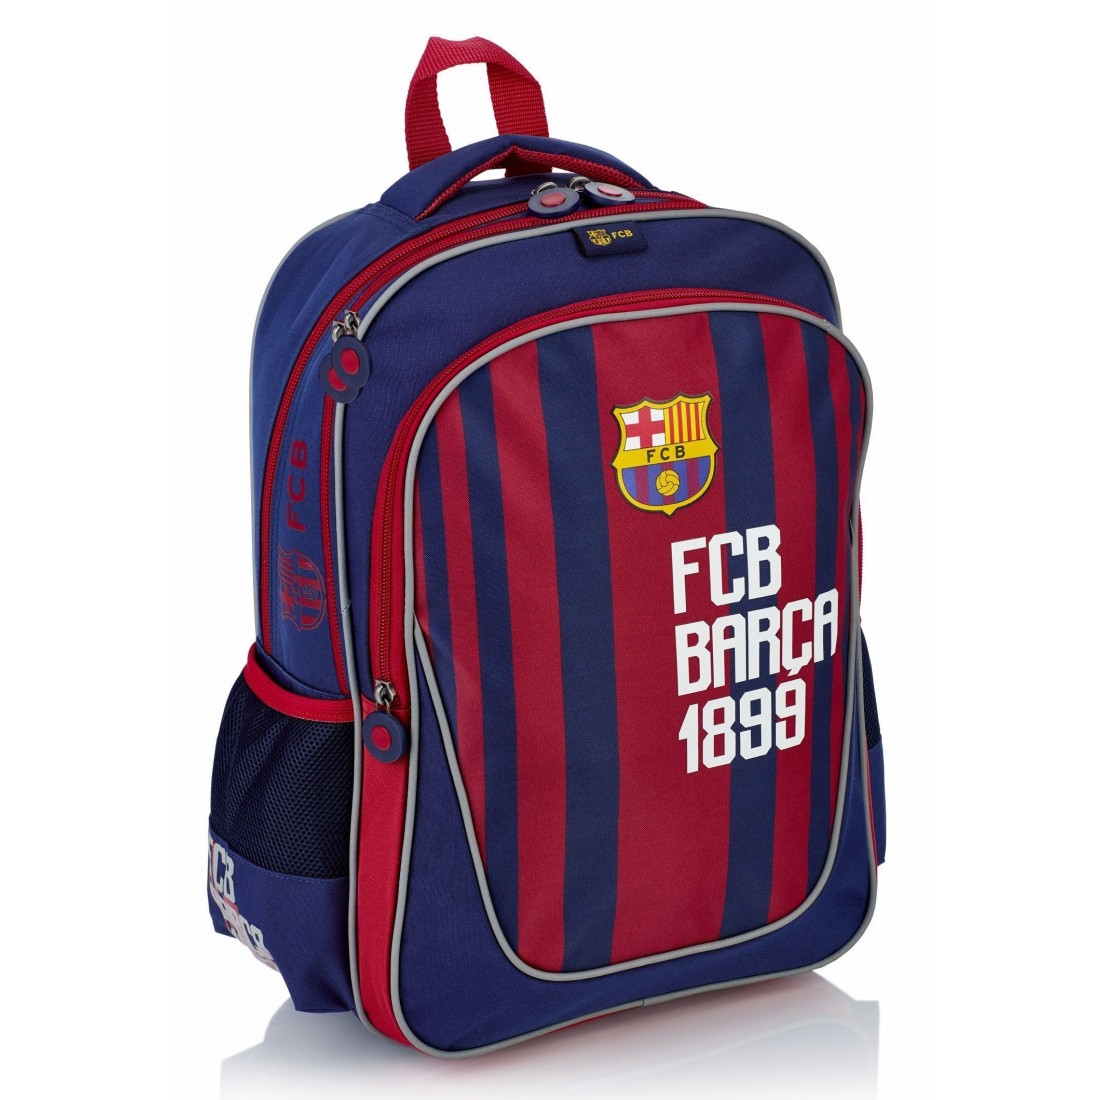 Plecak młodzieżowy FC Barcelona do pierwszej klasy Barca granatowe paski FC-171 - plecak-tornister.pl